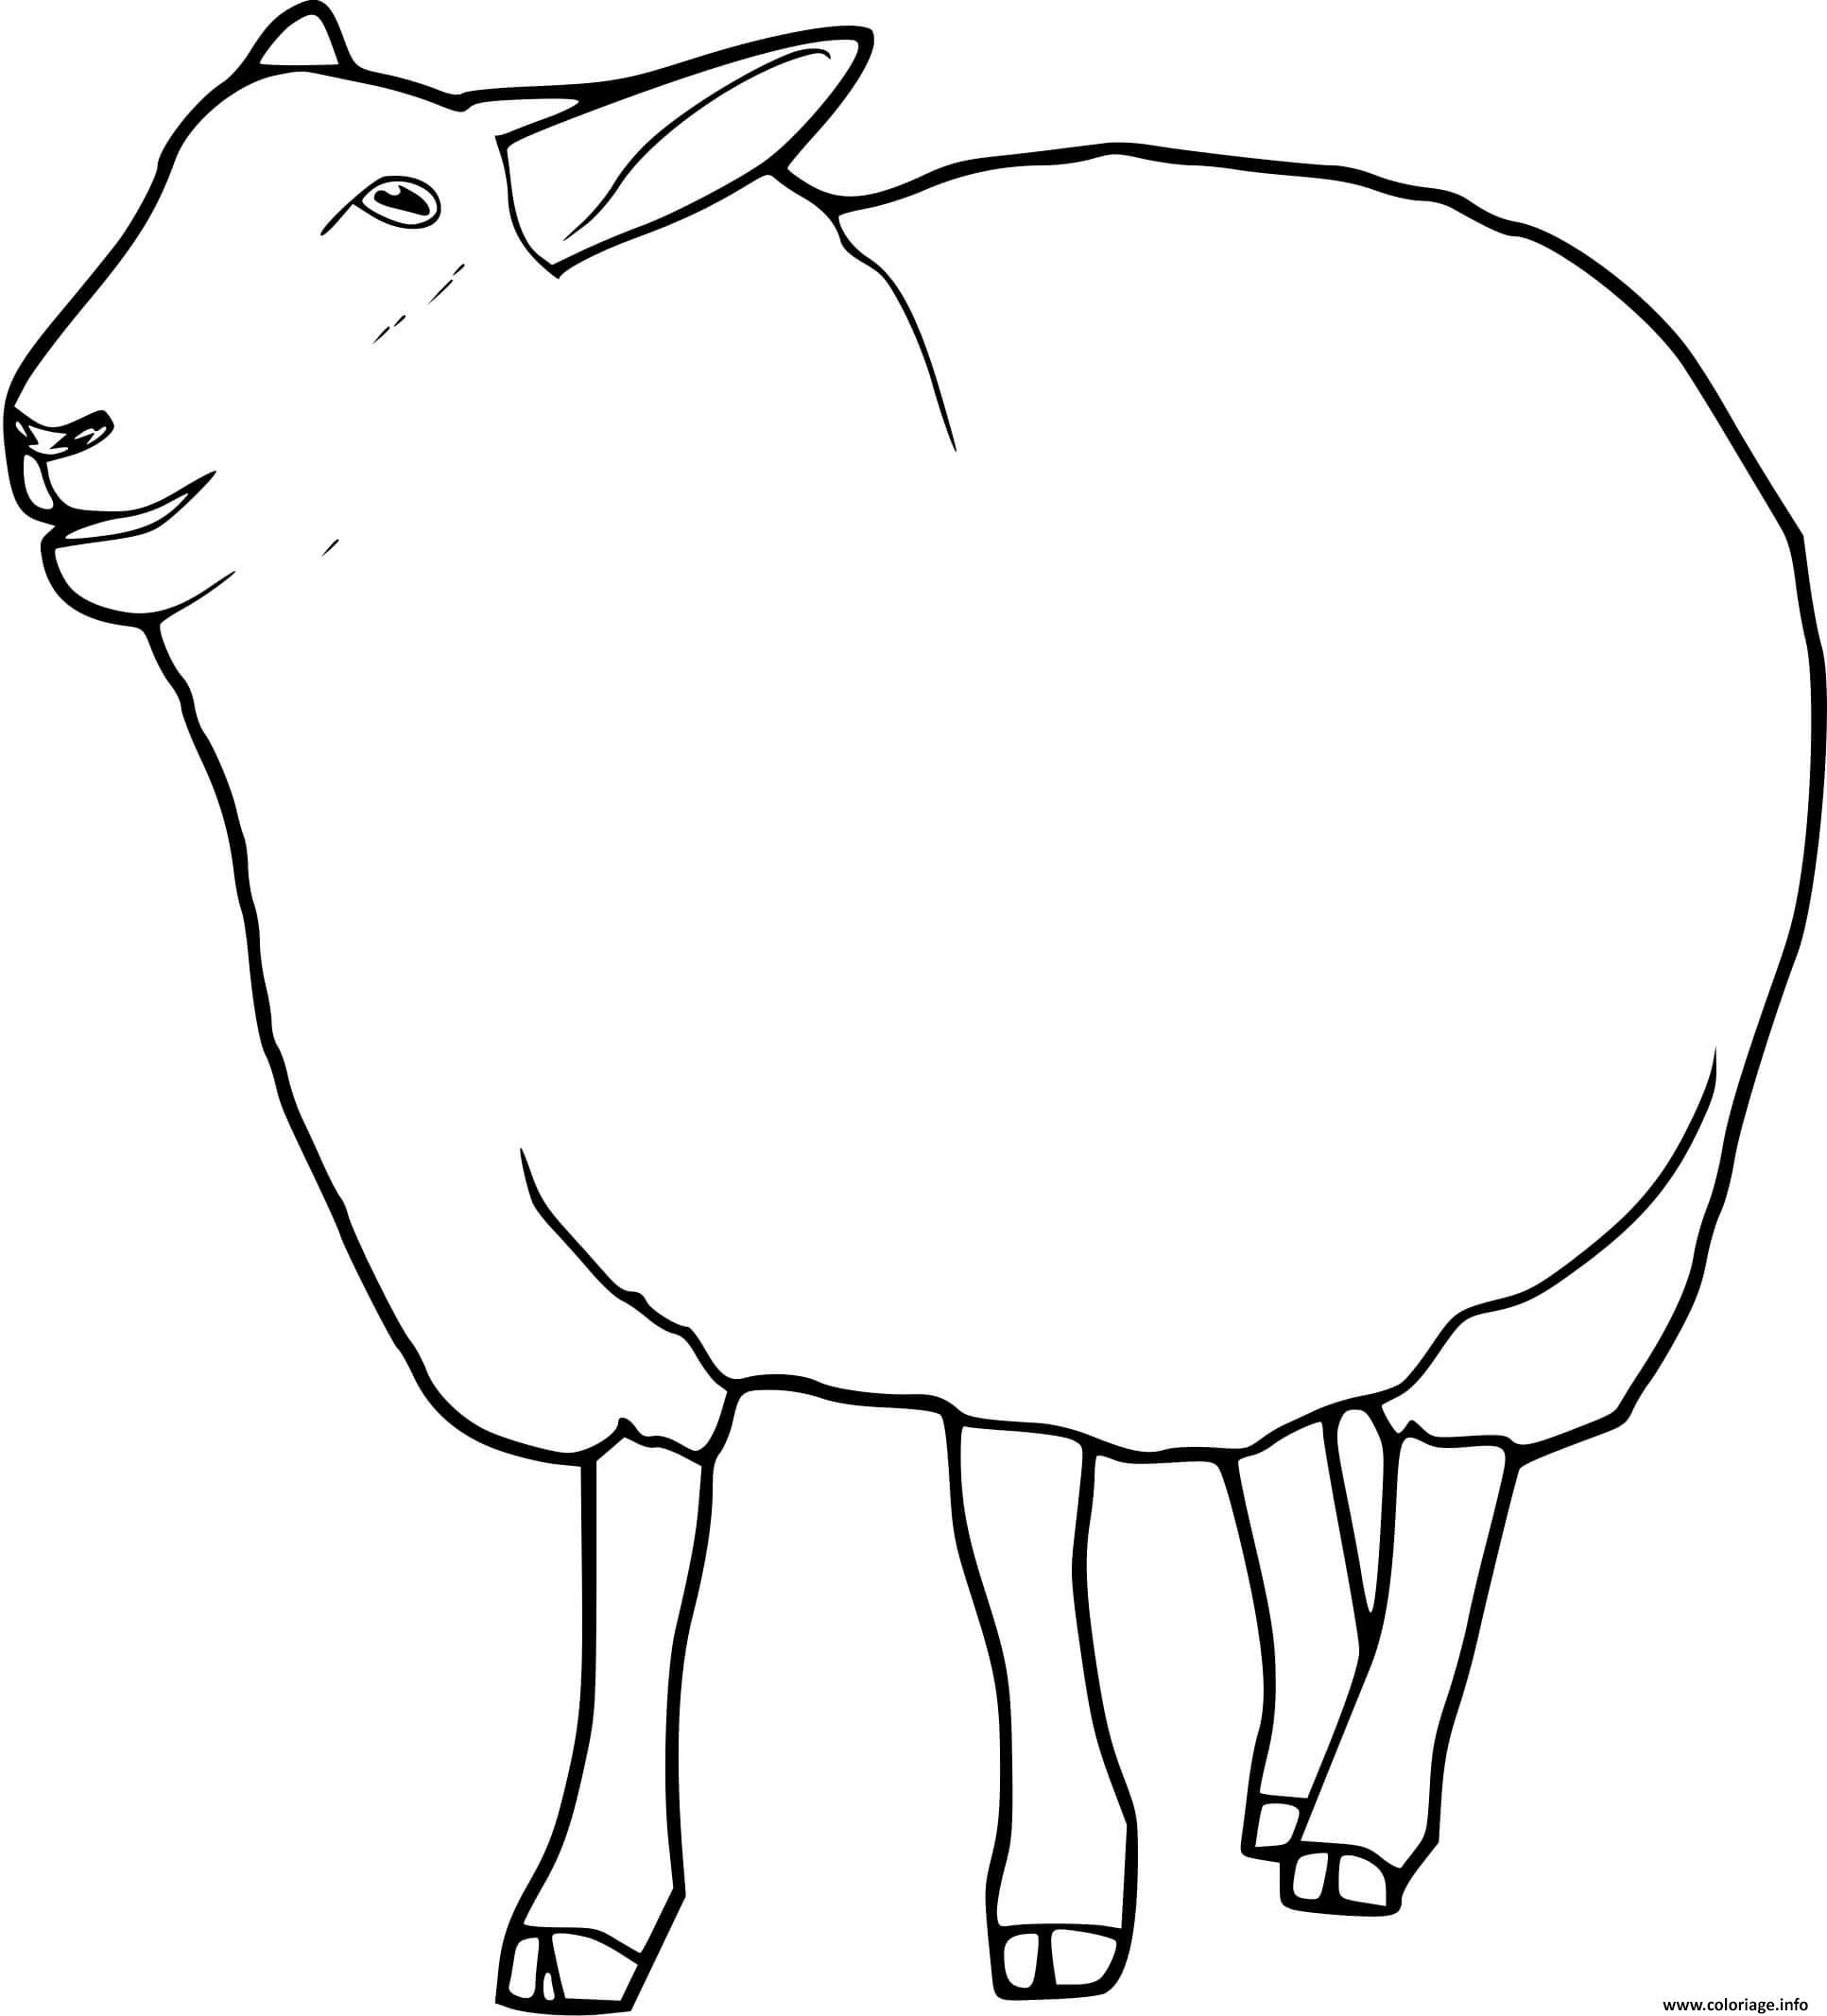 Dessin mouton mammifere herbivore Coloriage Gratuit à Imprimer